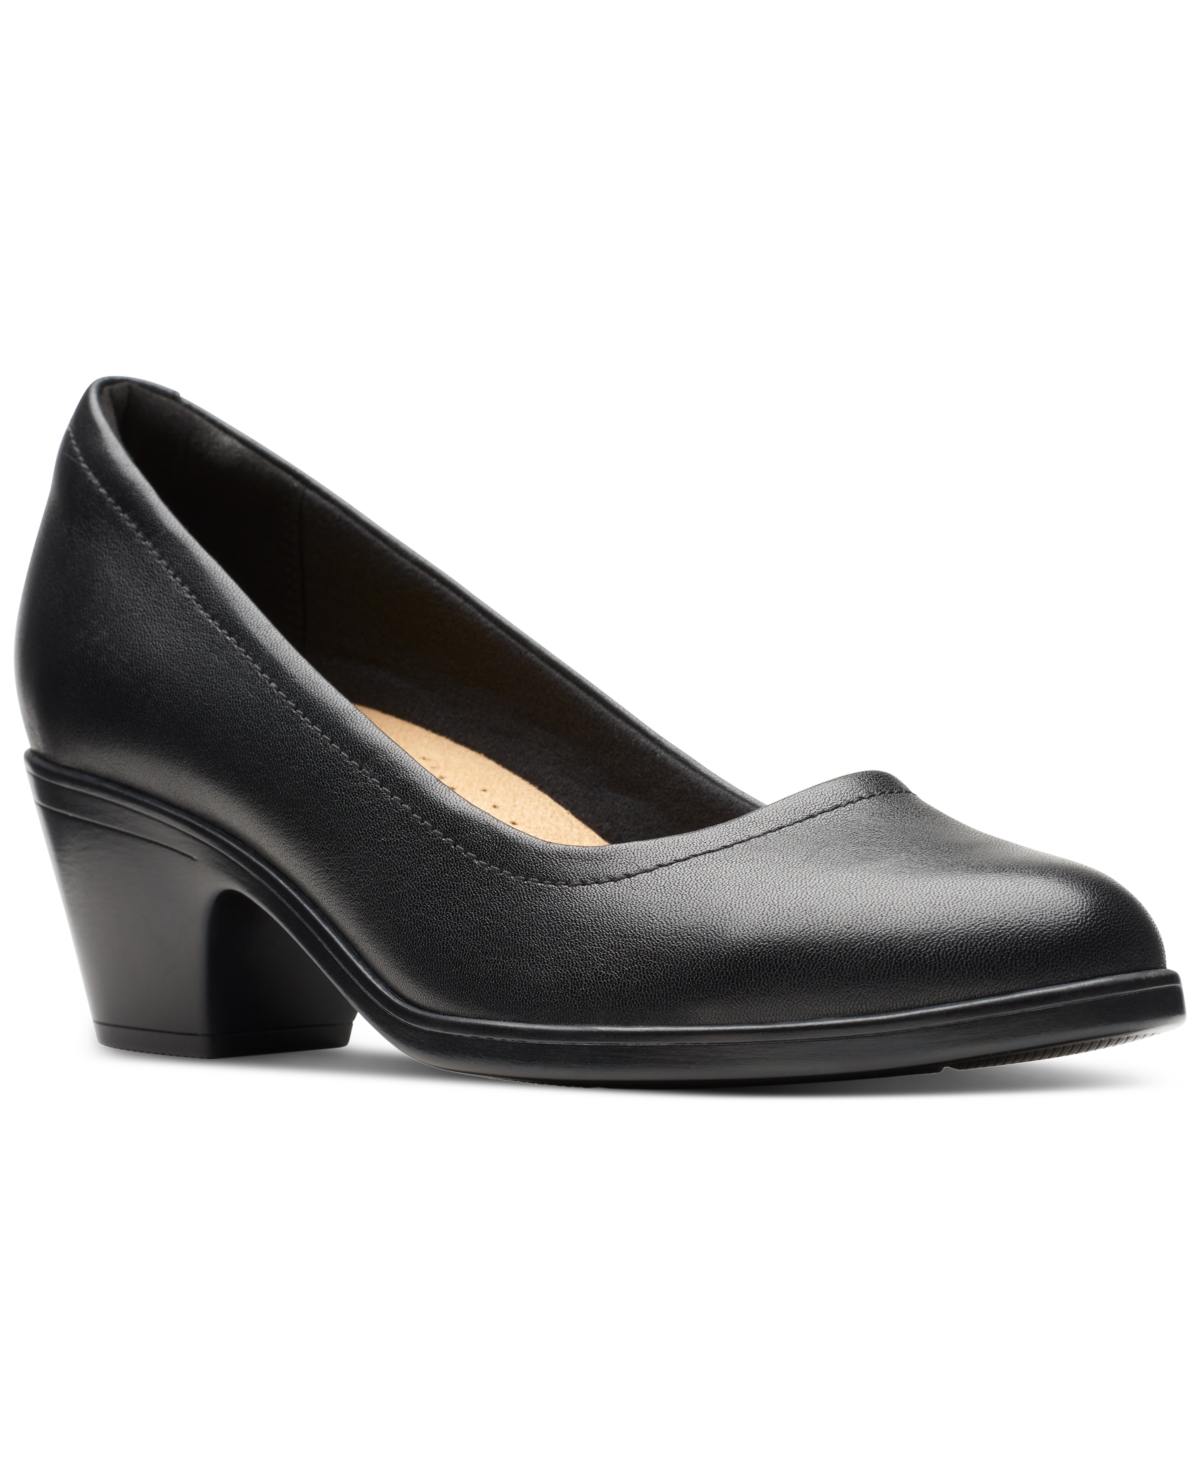 Clarks Women's Teresa Step Block-heel Comfort Pumps Women's Shoes In Black Leather